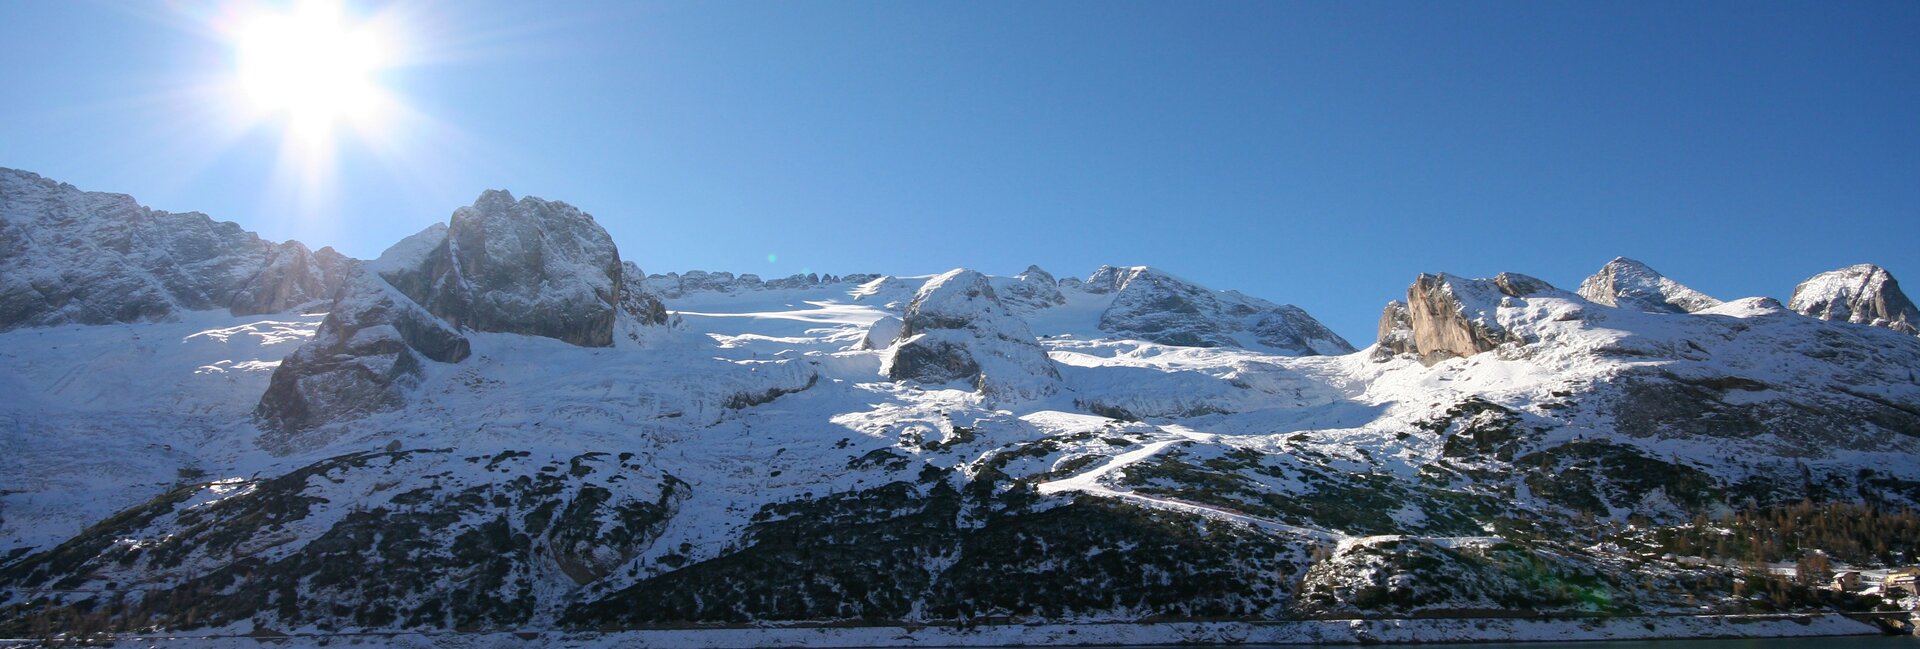 Ski area Passo Fedaia, Lago di Fedaia